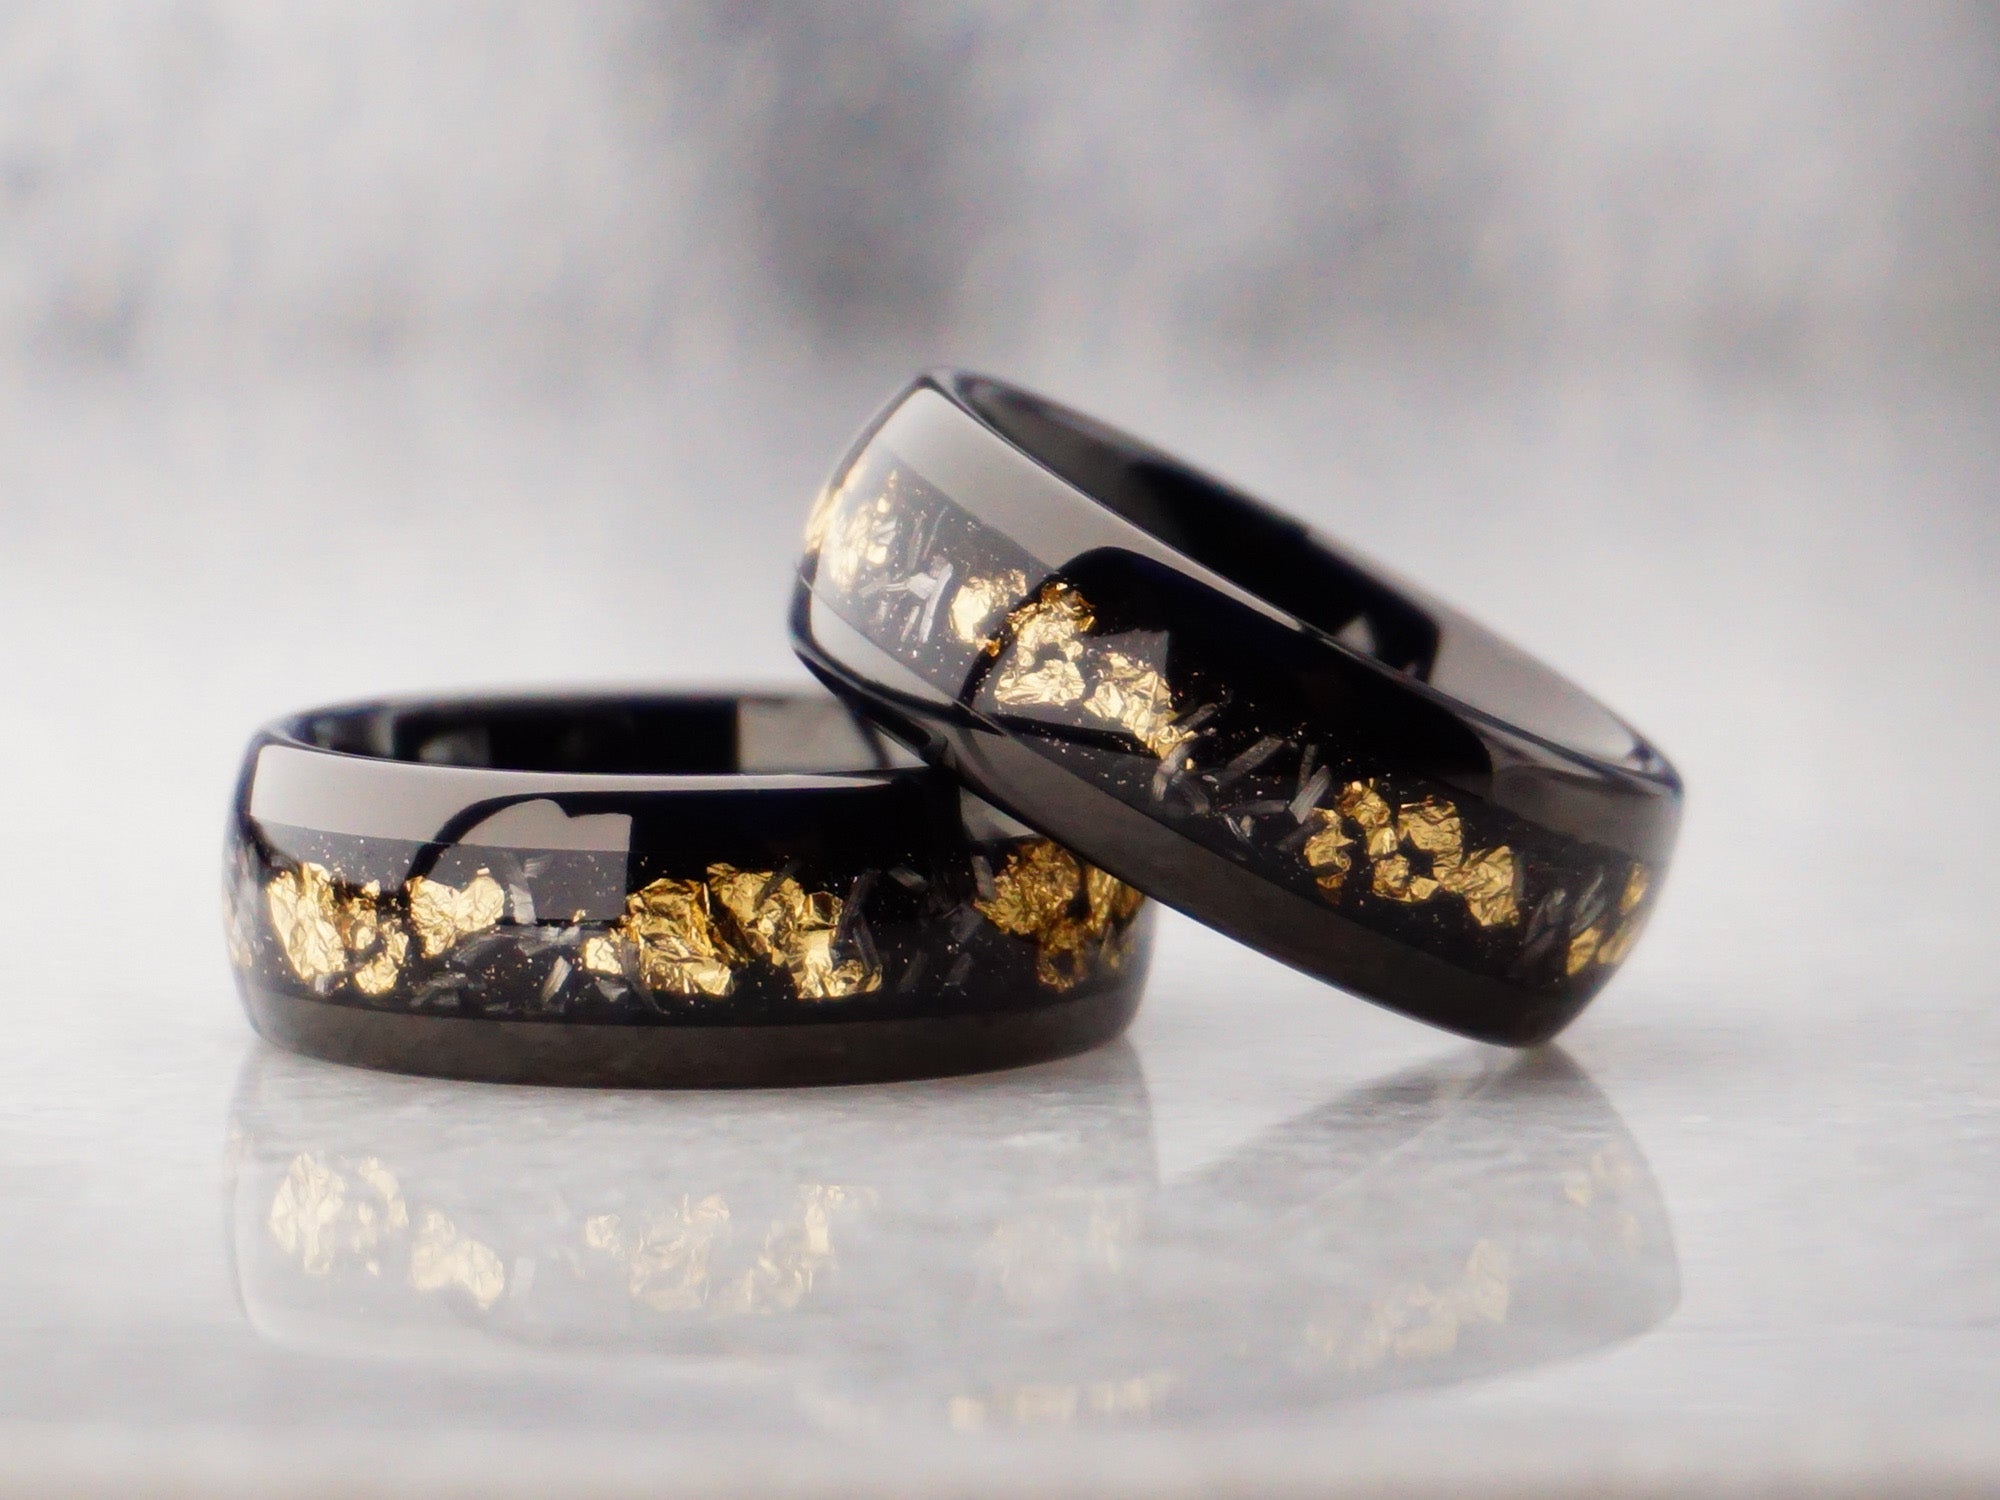 8mm gold leaf meteorite ring, polished black tungsten ring with meteorite metal and gold leaf inlay, modern mens wedding ring